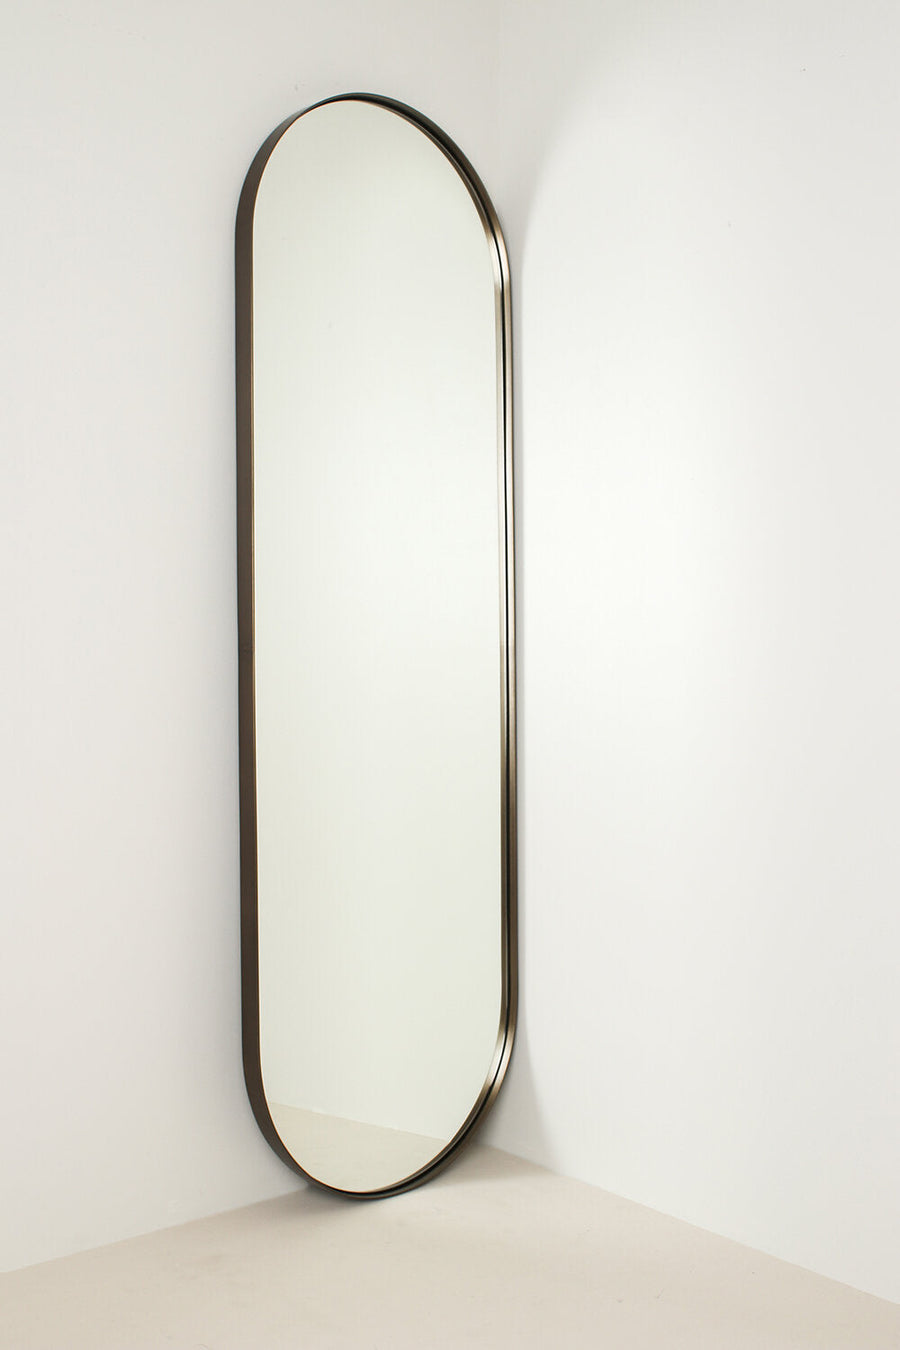 Sphere Mirror Sample - 500 x 1300mm - Darkened Brass